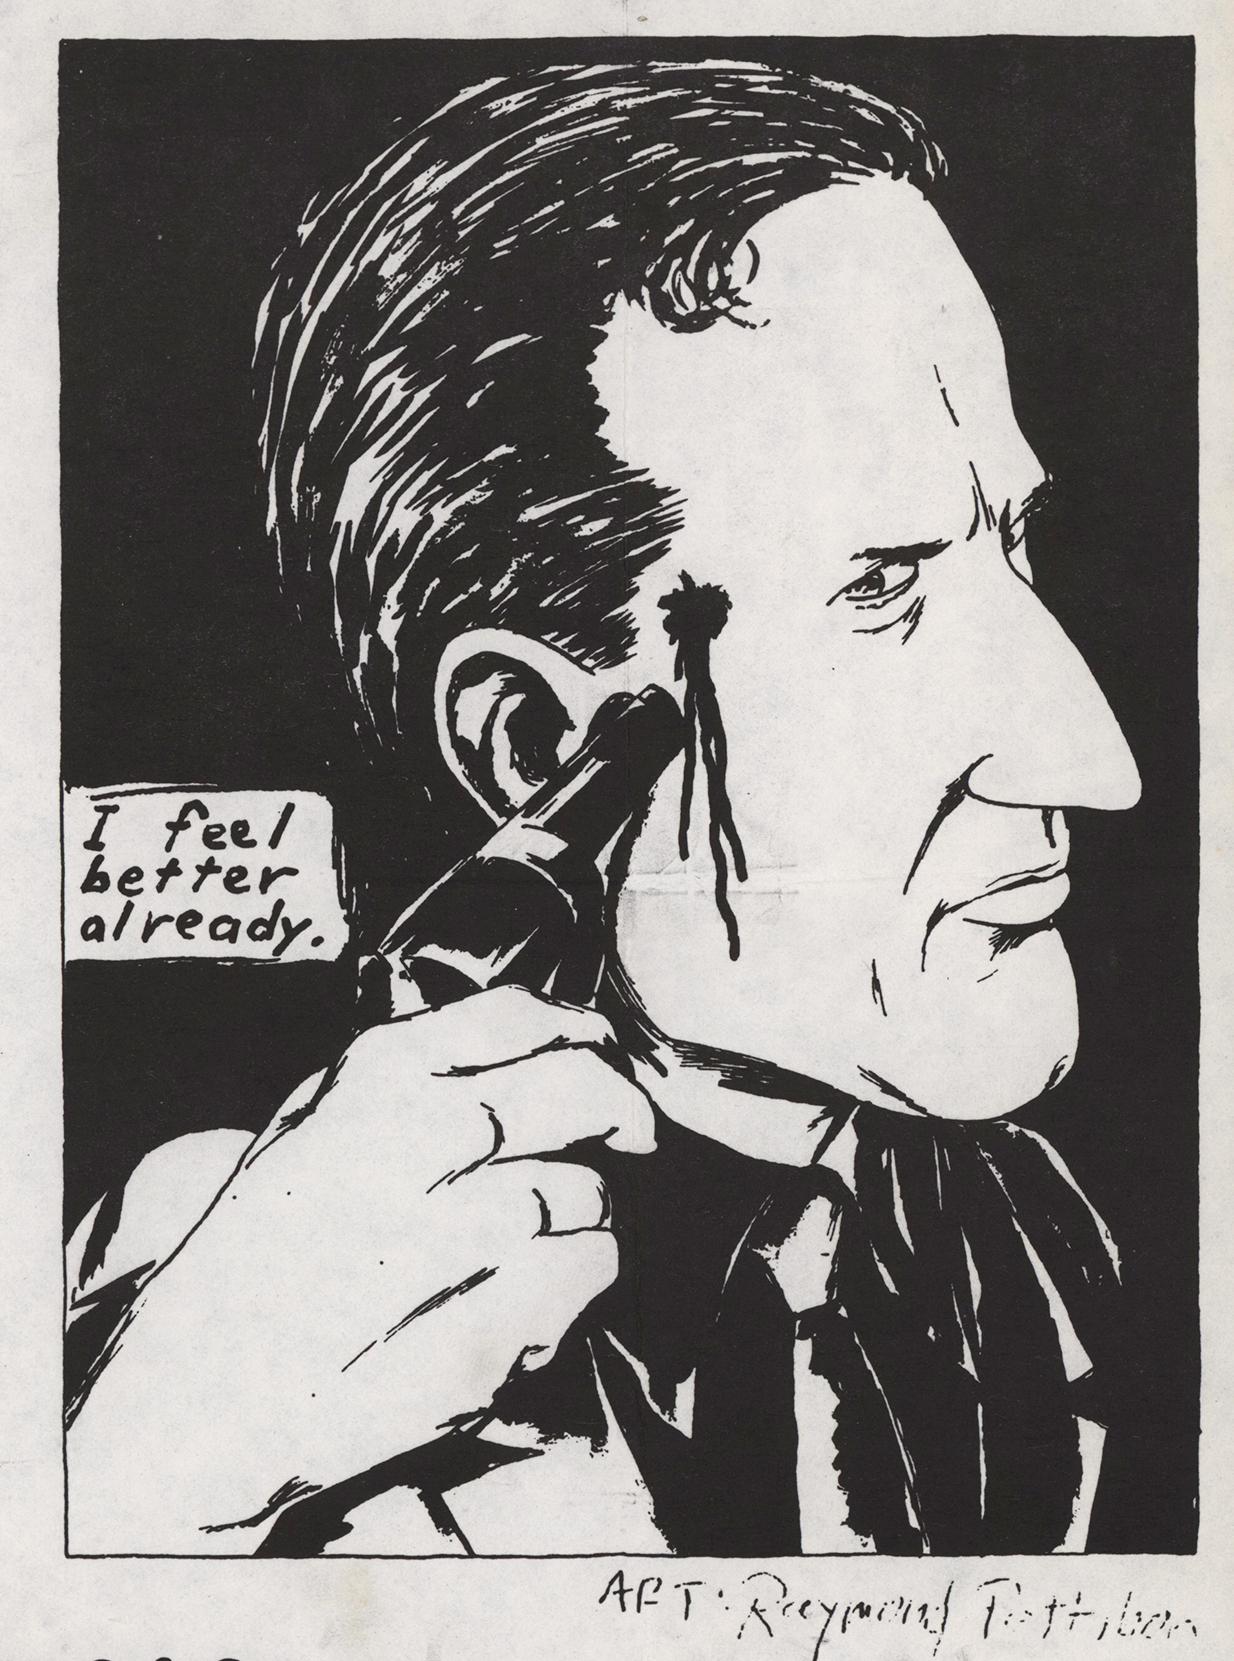 Raymond Pettibon, illustrierter Punkfliegenfänger